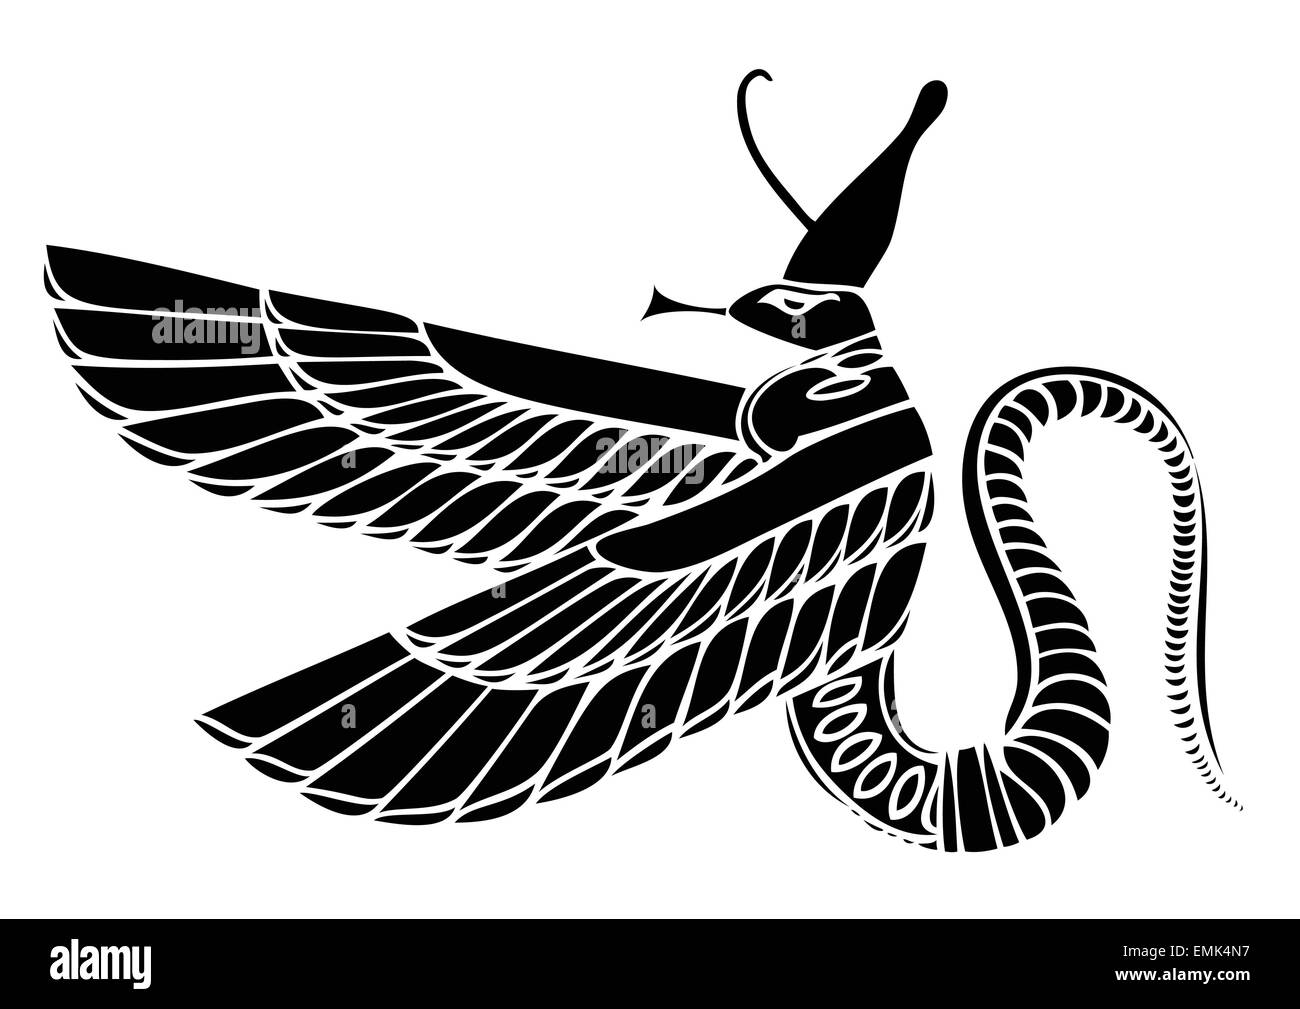 Egyptian demon - dragon - vector Stock Vector